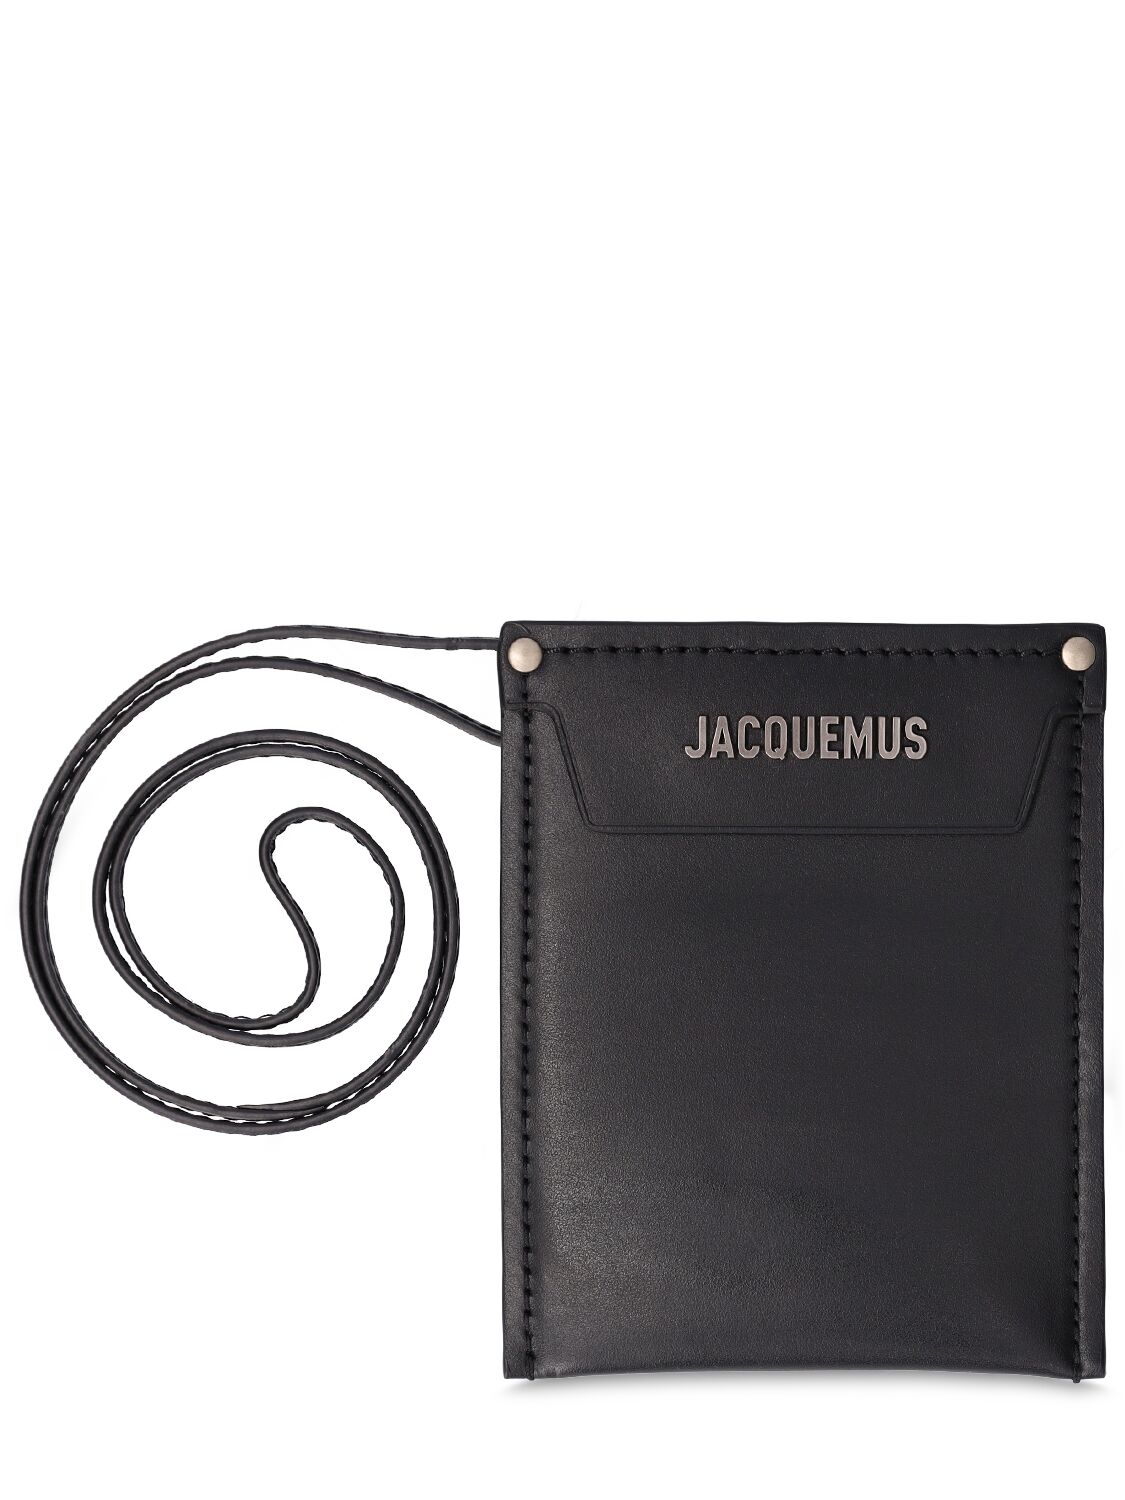 Jacquemus Le Porte Poche Meunier Leather Wallet In Black